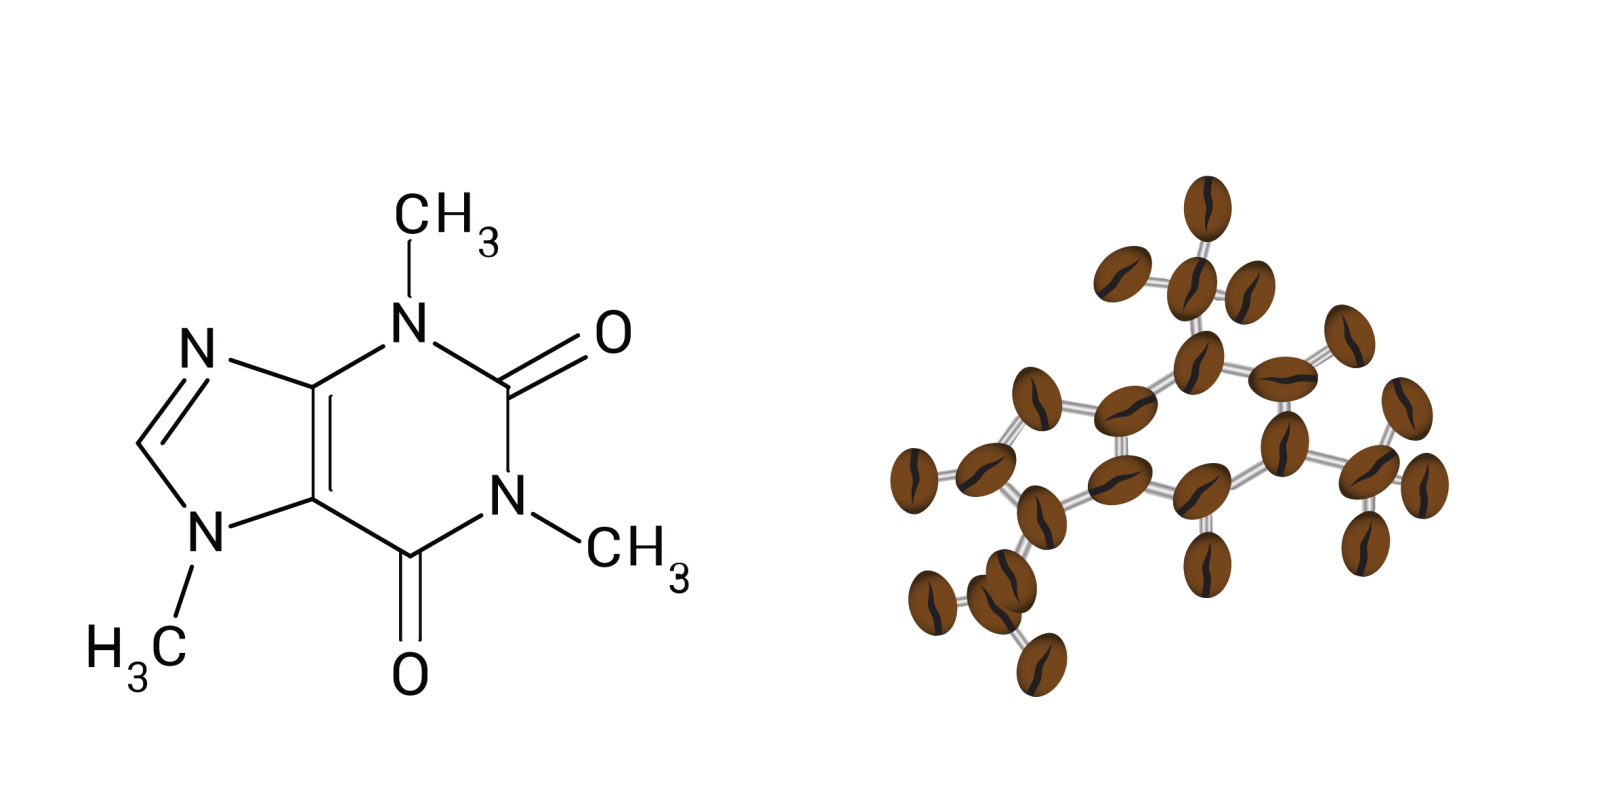 Kjemisk struktur for koffein. Illustrasjon: Tine og Odd-Magne v/NAFKAM 2019